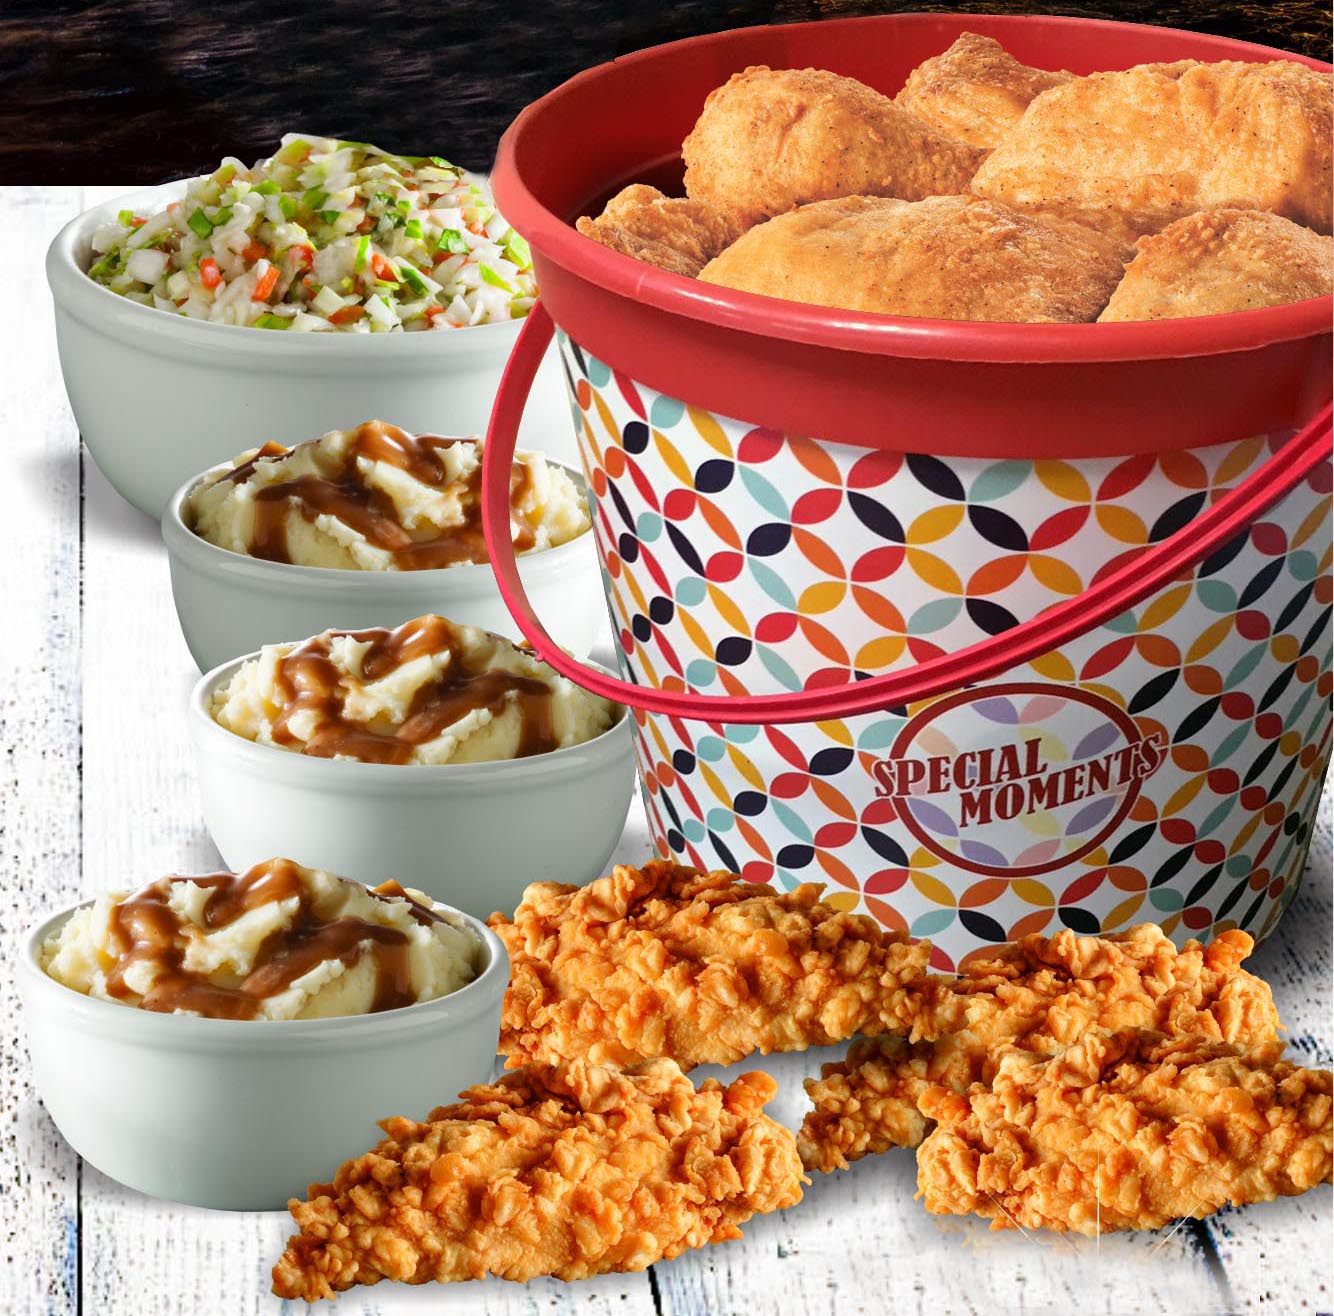 ‘Nami un ‘Bucket Meal’ di KFC!